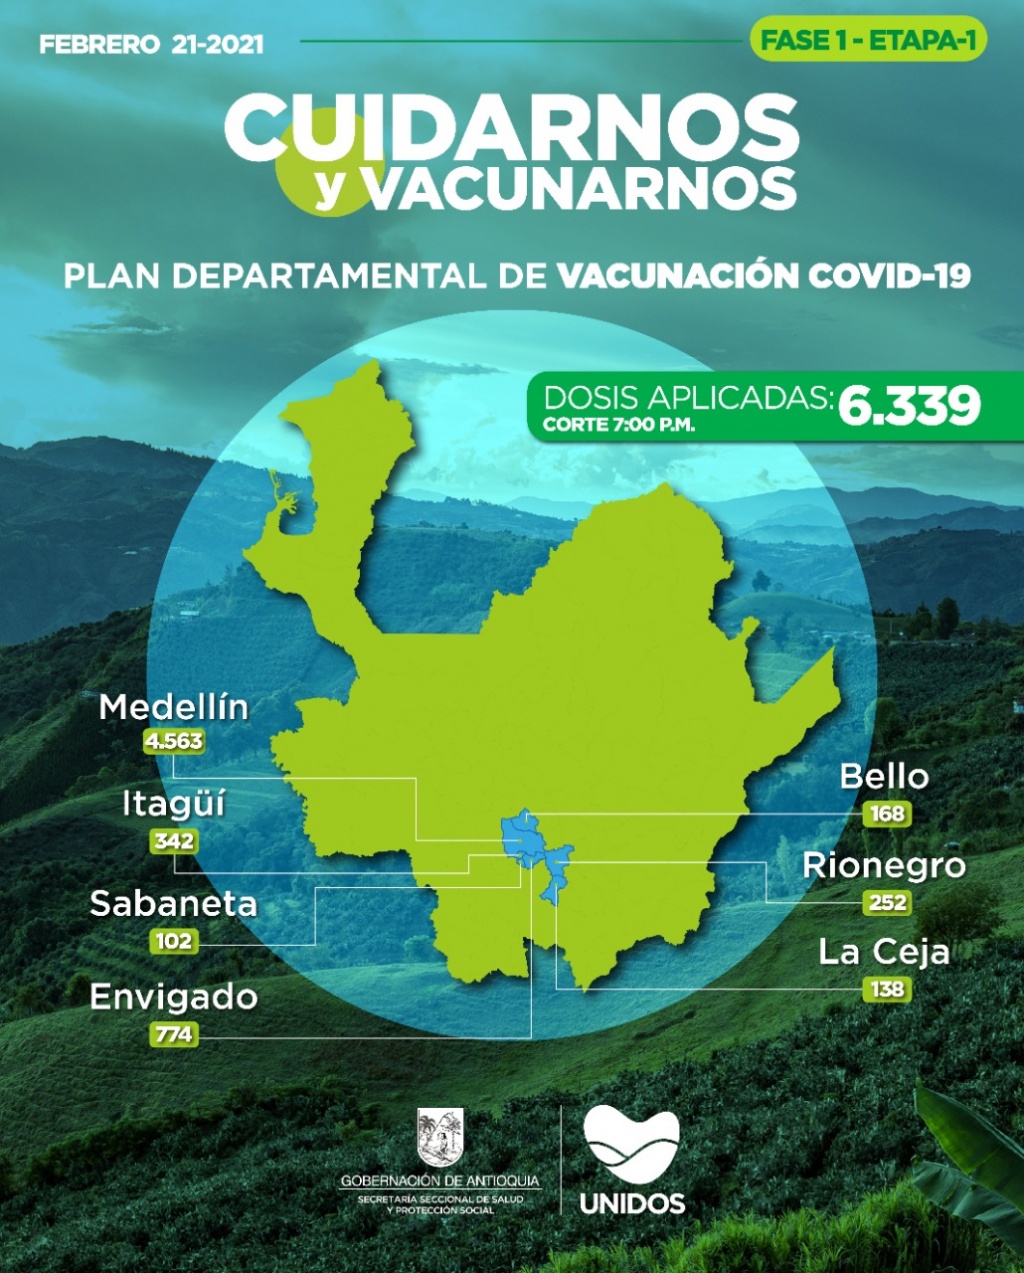 Con 1.493 dosis aplicadas hoy, Antioquia llega a 6.339 vacunados contra COVID19